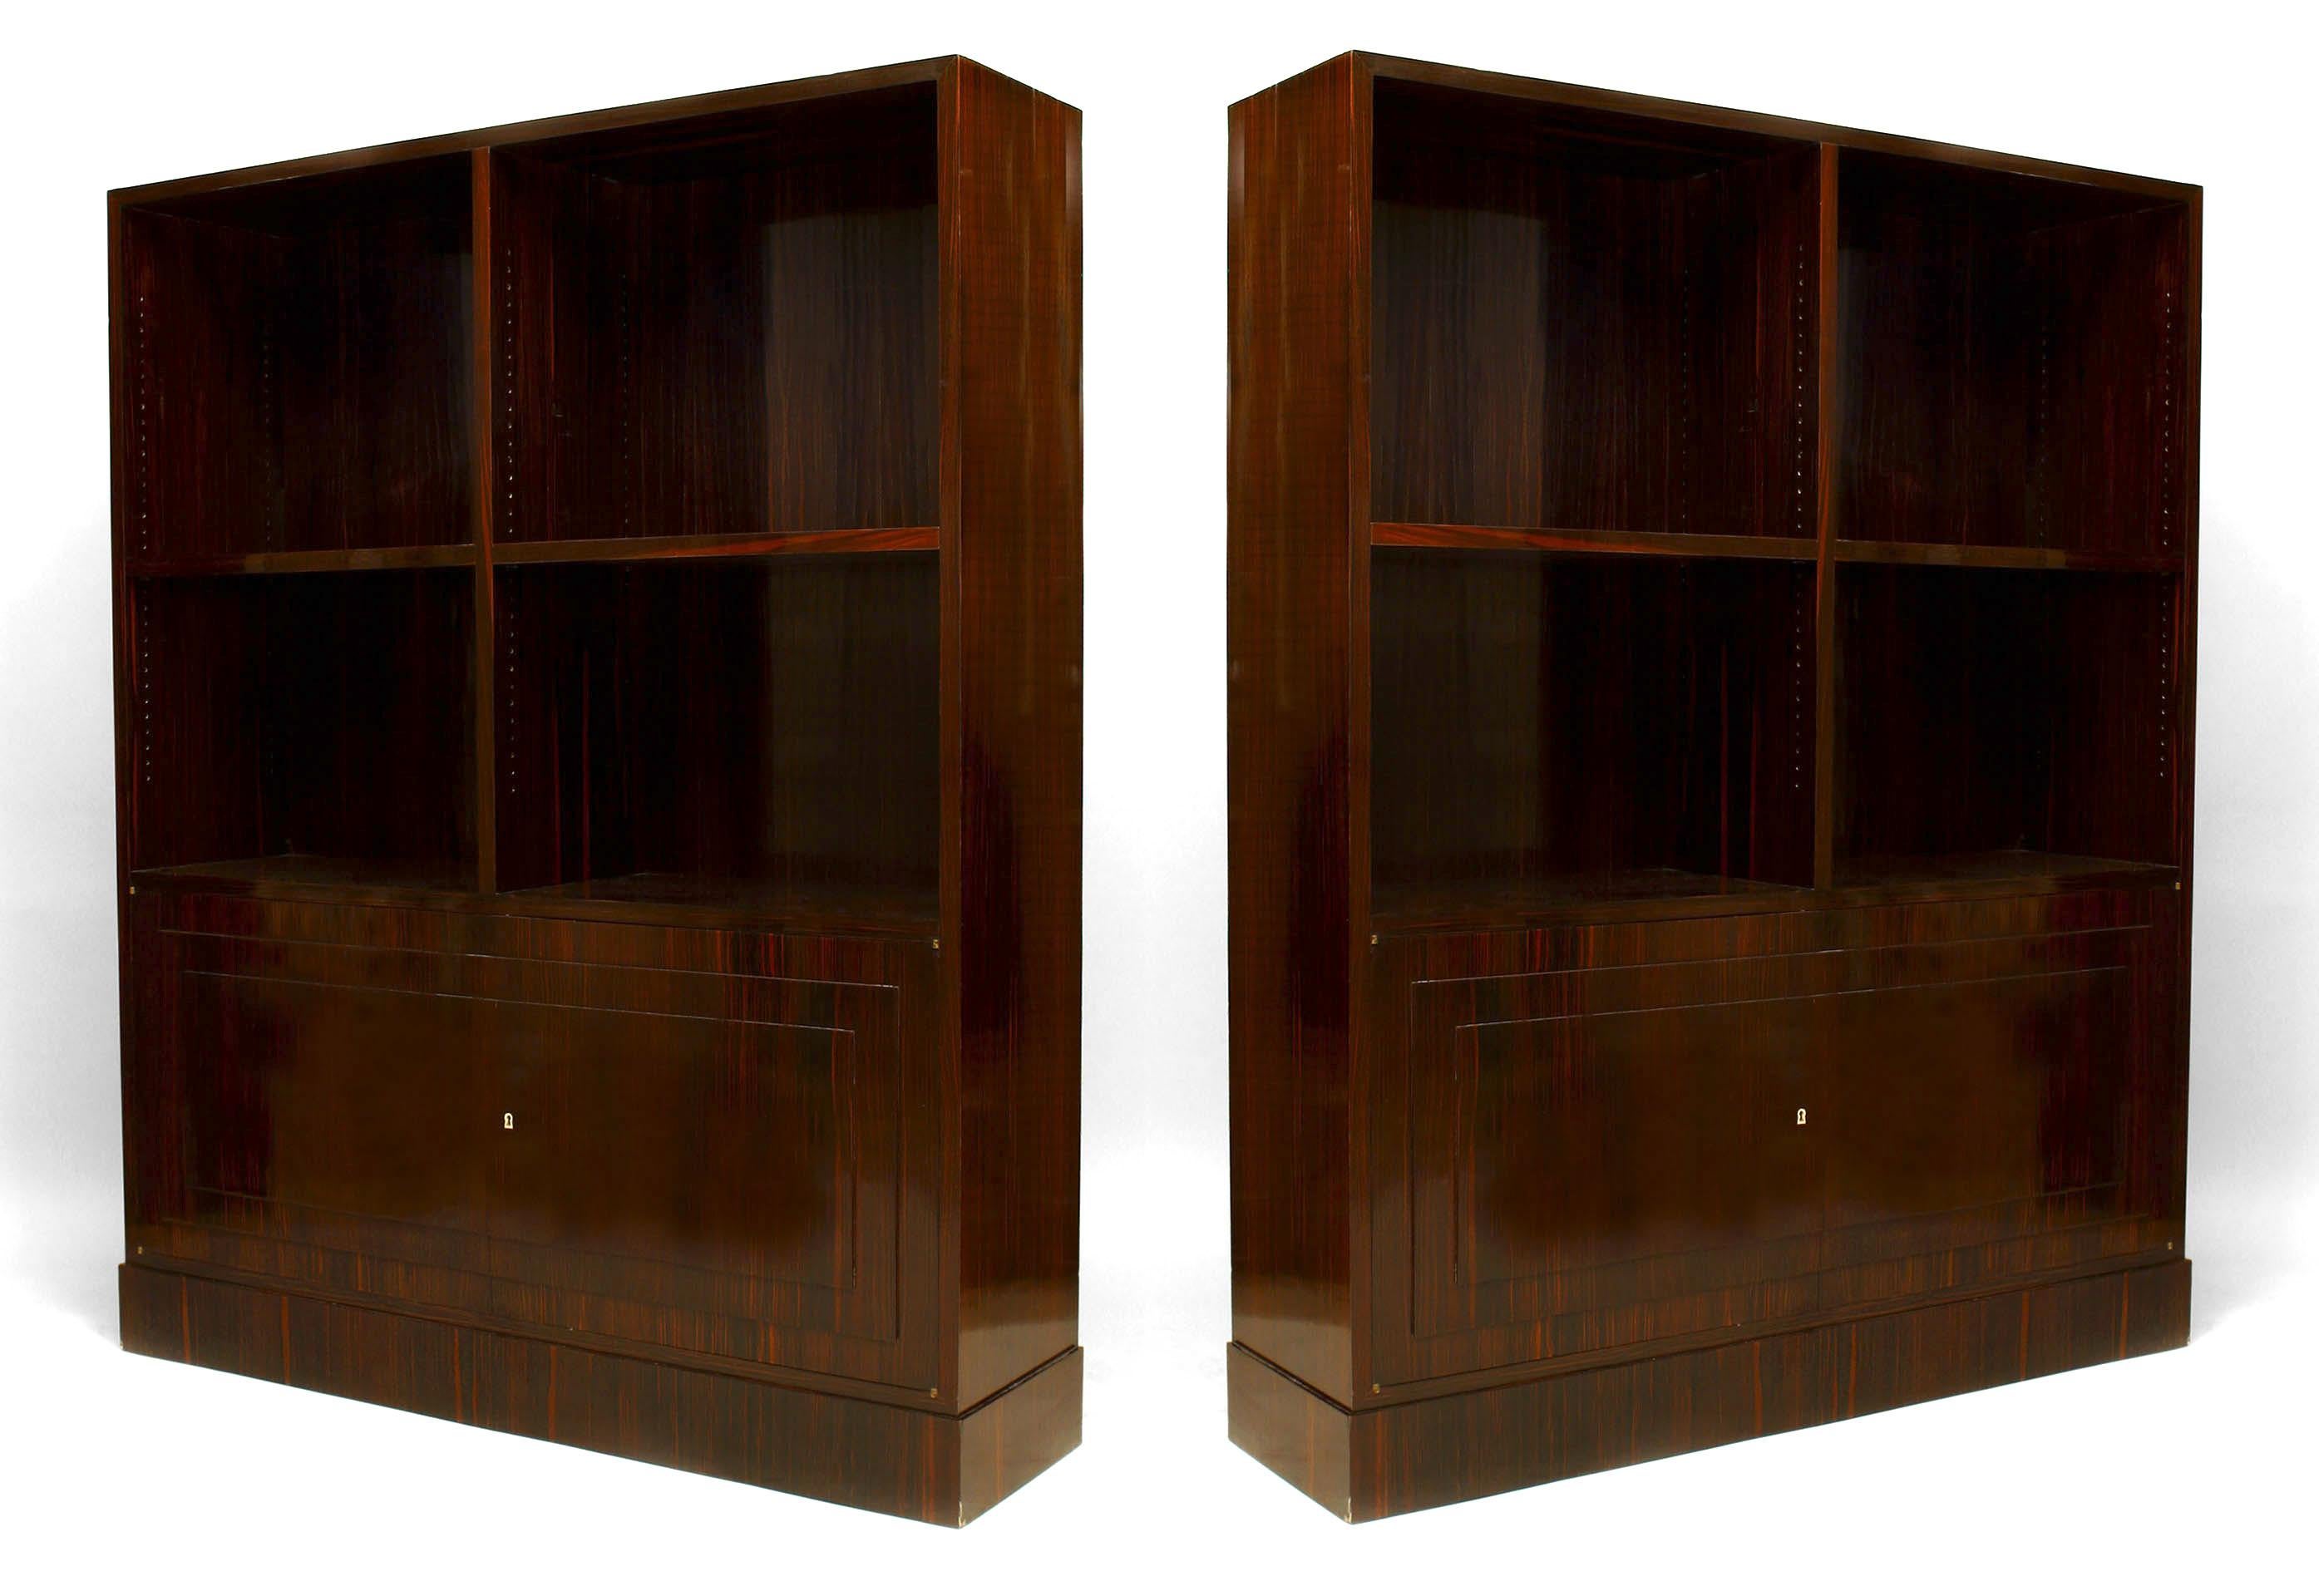 Ein Paar französische Art Deco Bücherschränke aus Kalamanderholz mit zwei offenen Bücherregalen.
 